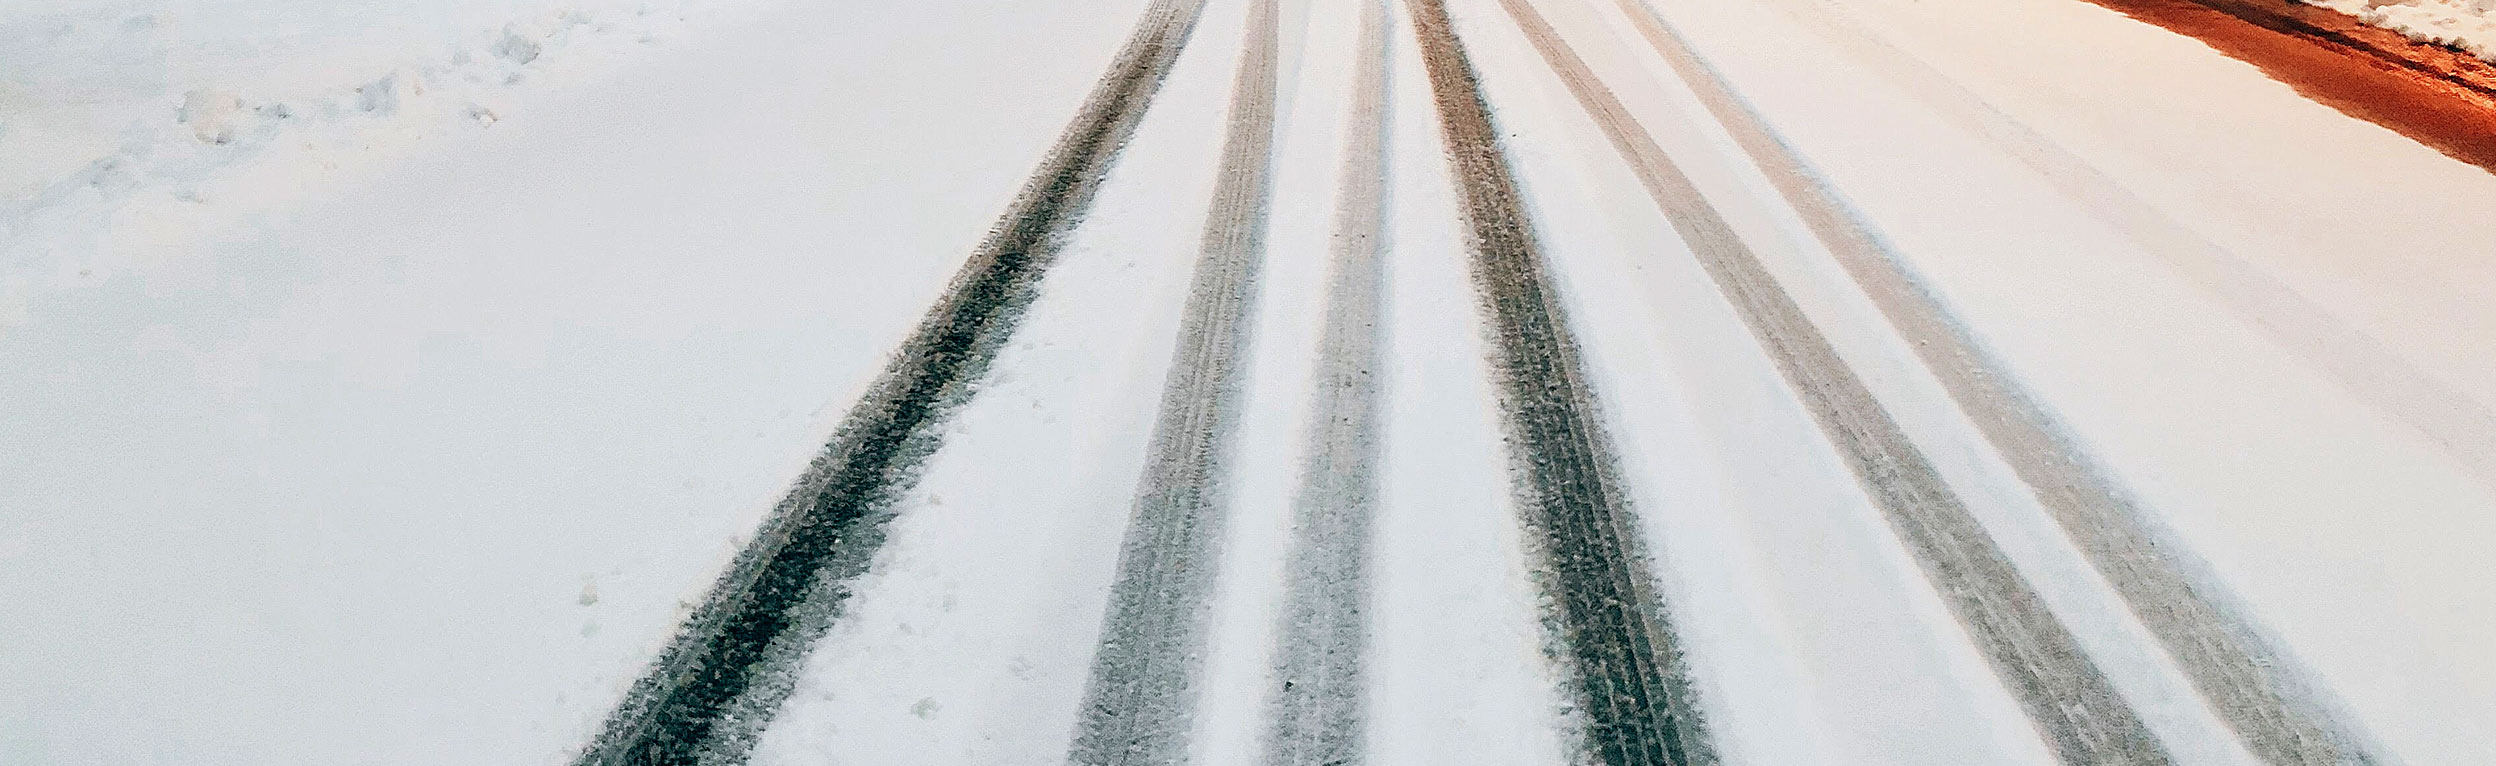 Vej med hjulspor i sneen